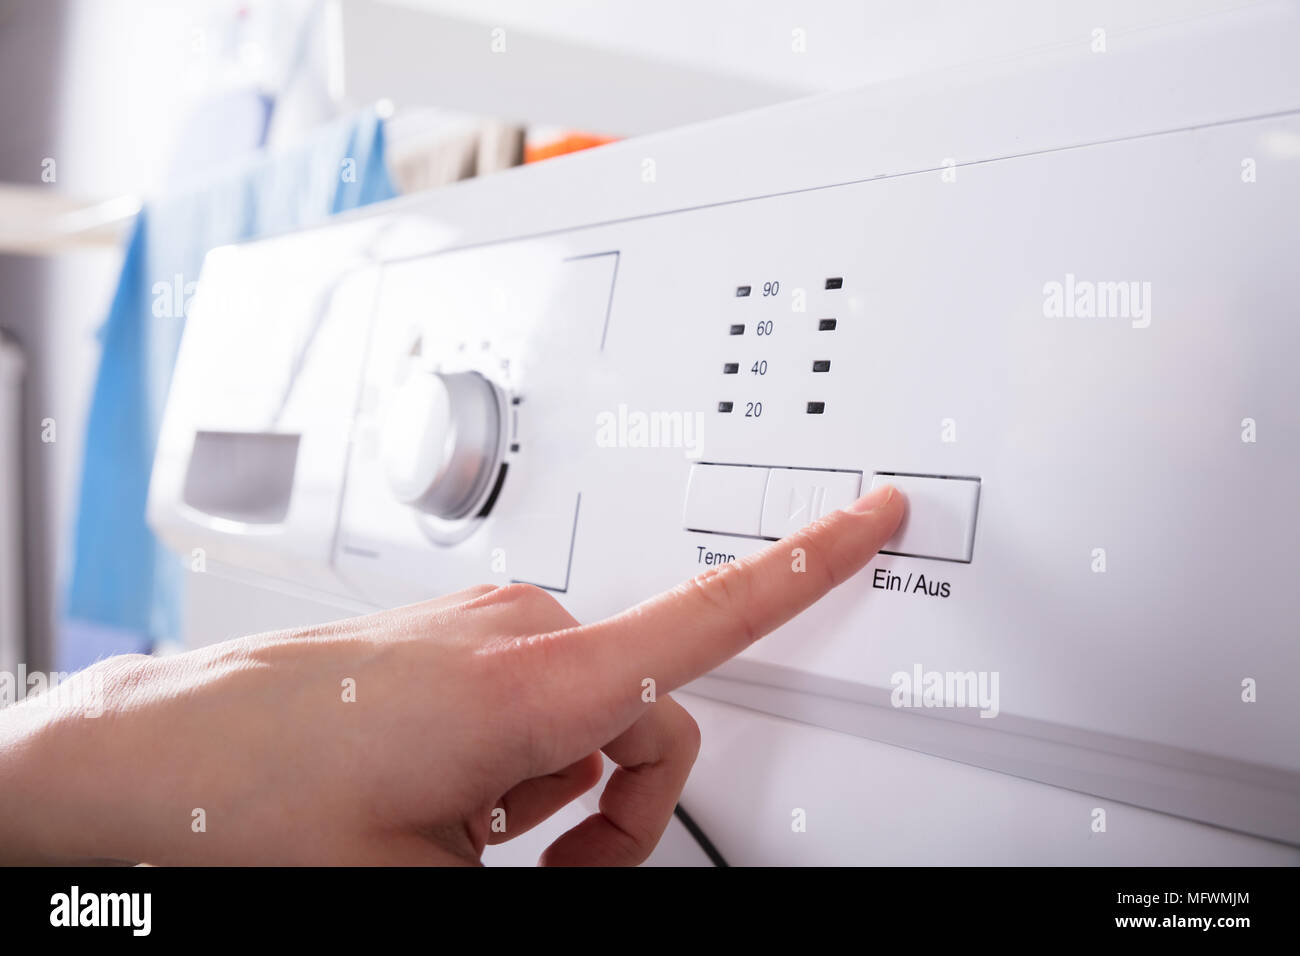 Close-up of a person's doigt appuyant sur le bouton de la machine à laver Banque D'Images